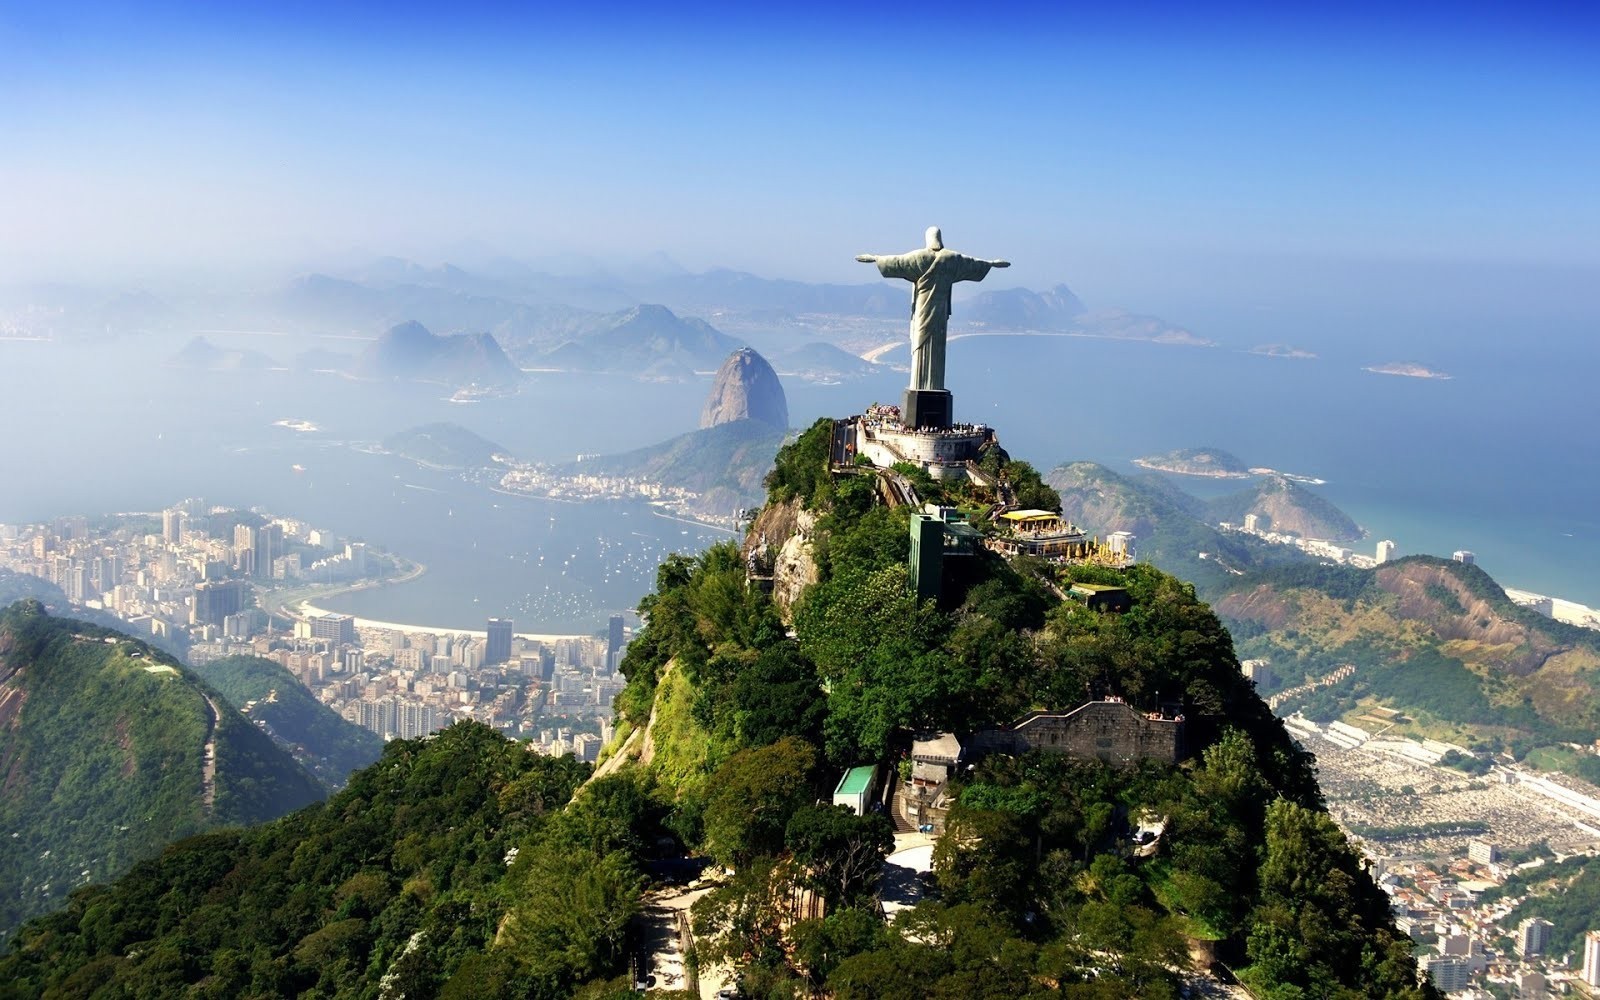 Brasil via libre a transferencias de criptomonedas, incluso en juegos de suerte y azar